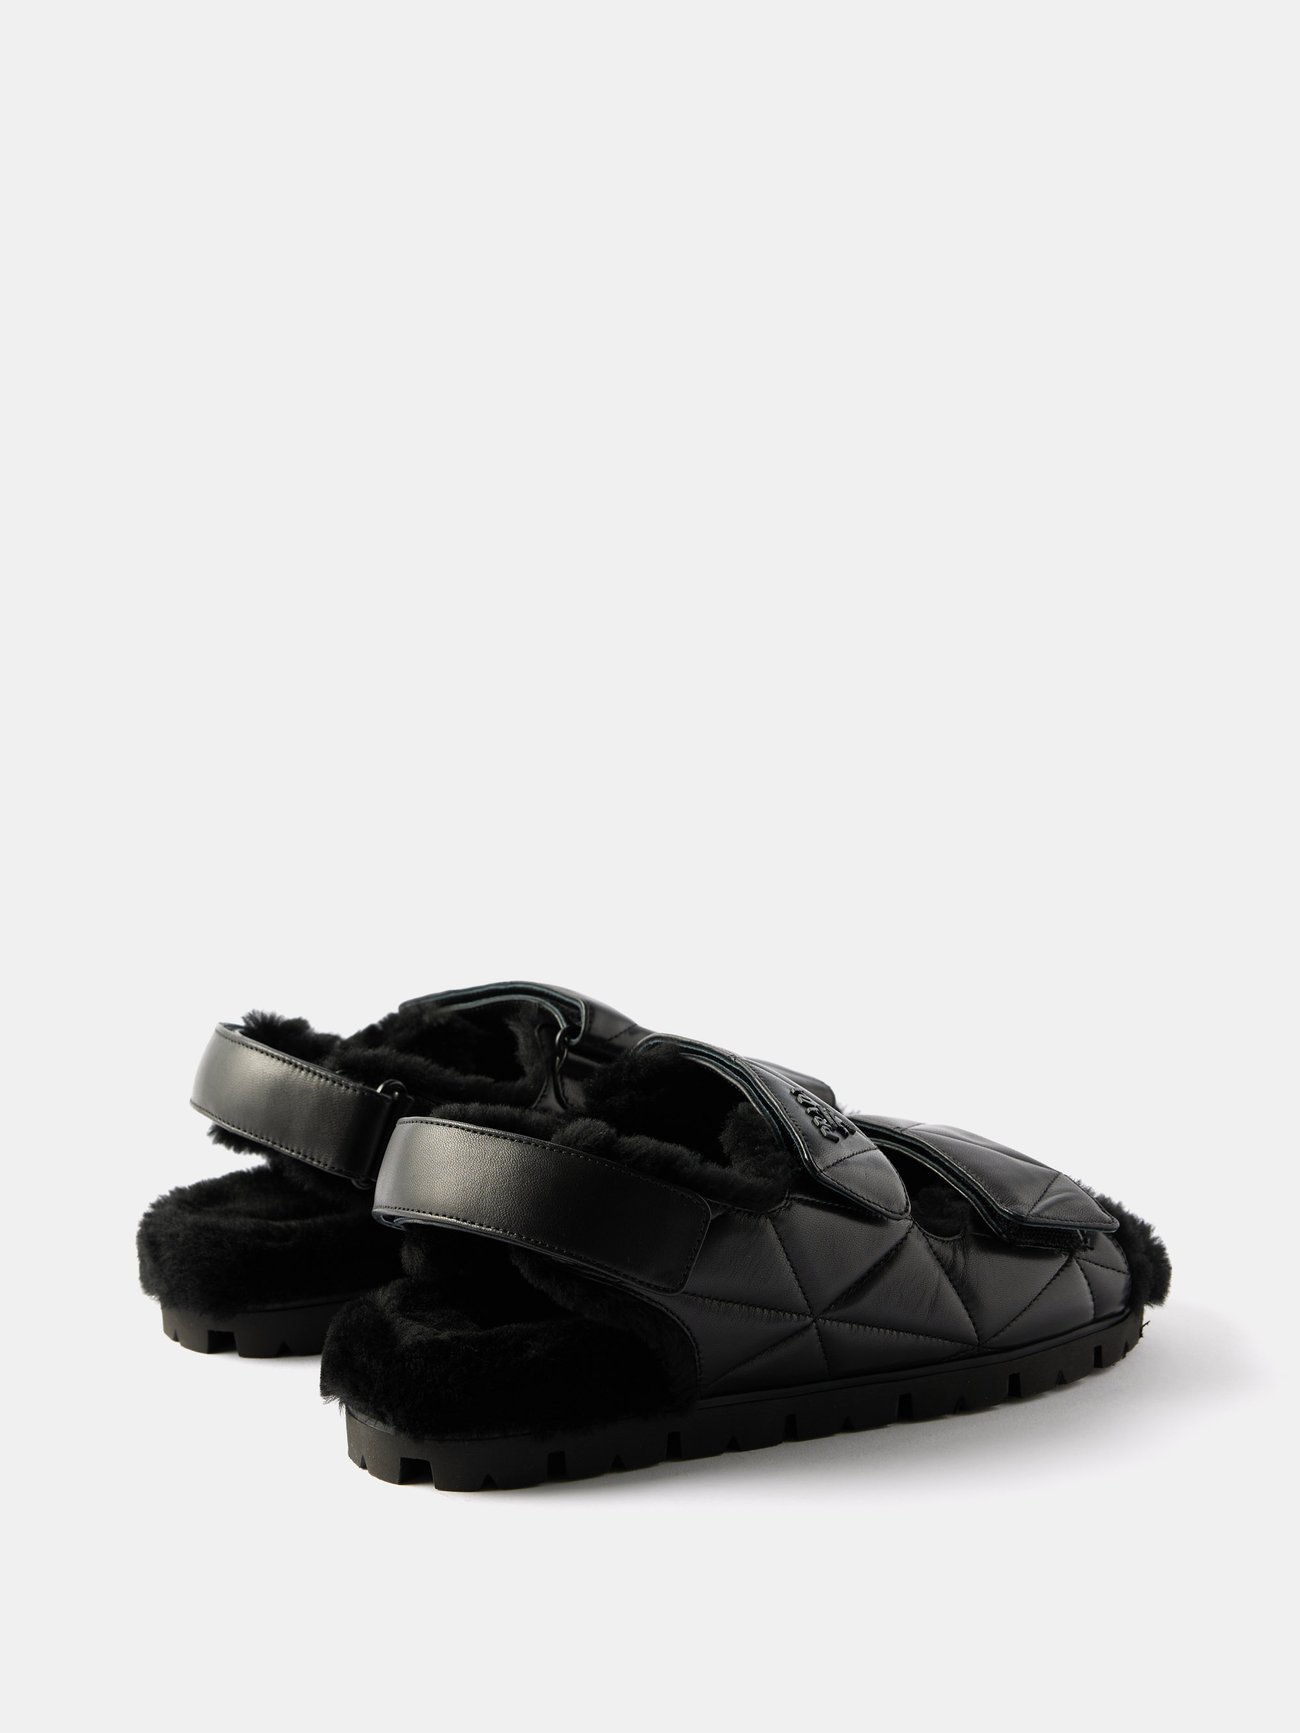 Louis Vuitton Men Criss Cross Leather Slide Flats SIZE 7UK (7.5US